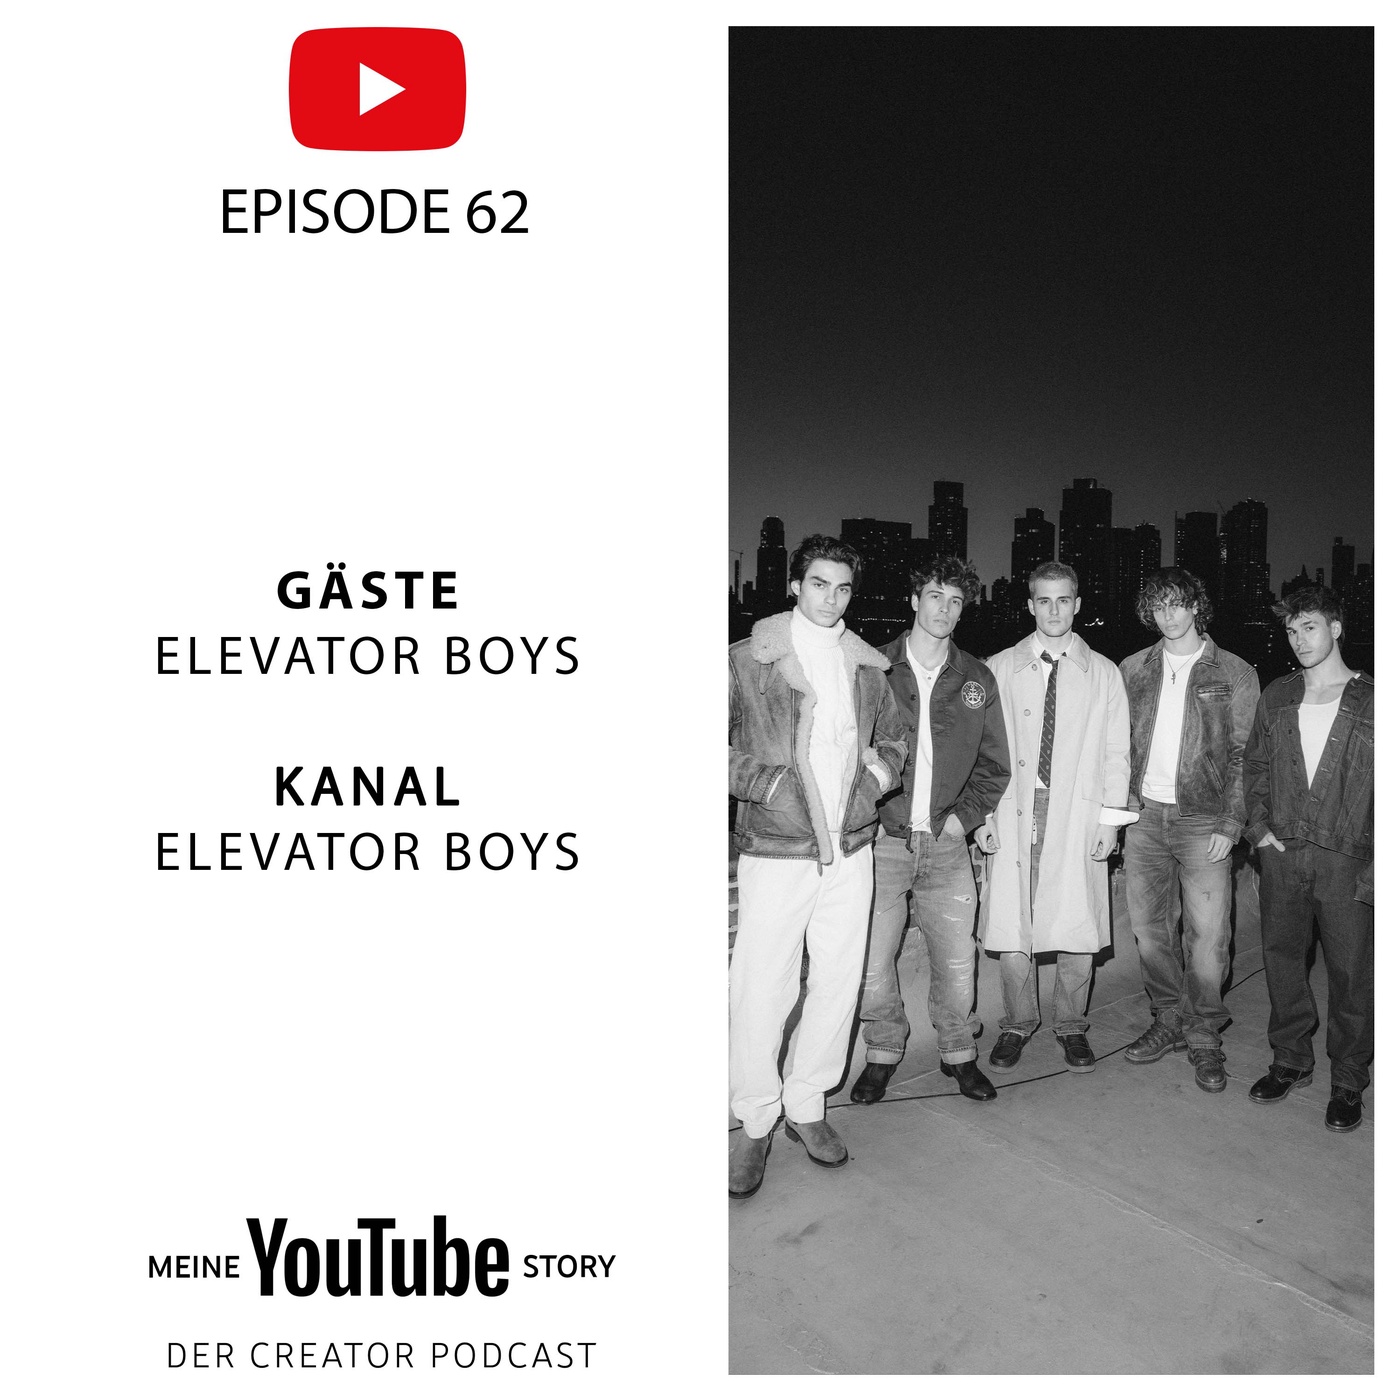 Elevator Boys: 400 Millionen Aufrufe für ein Video und eine Musikkarriere? Challenge Accepted!